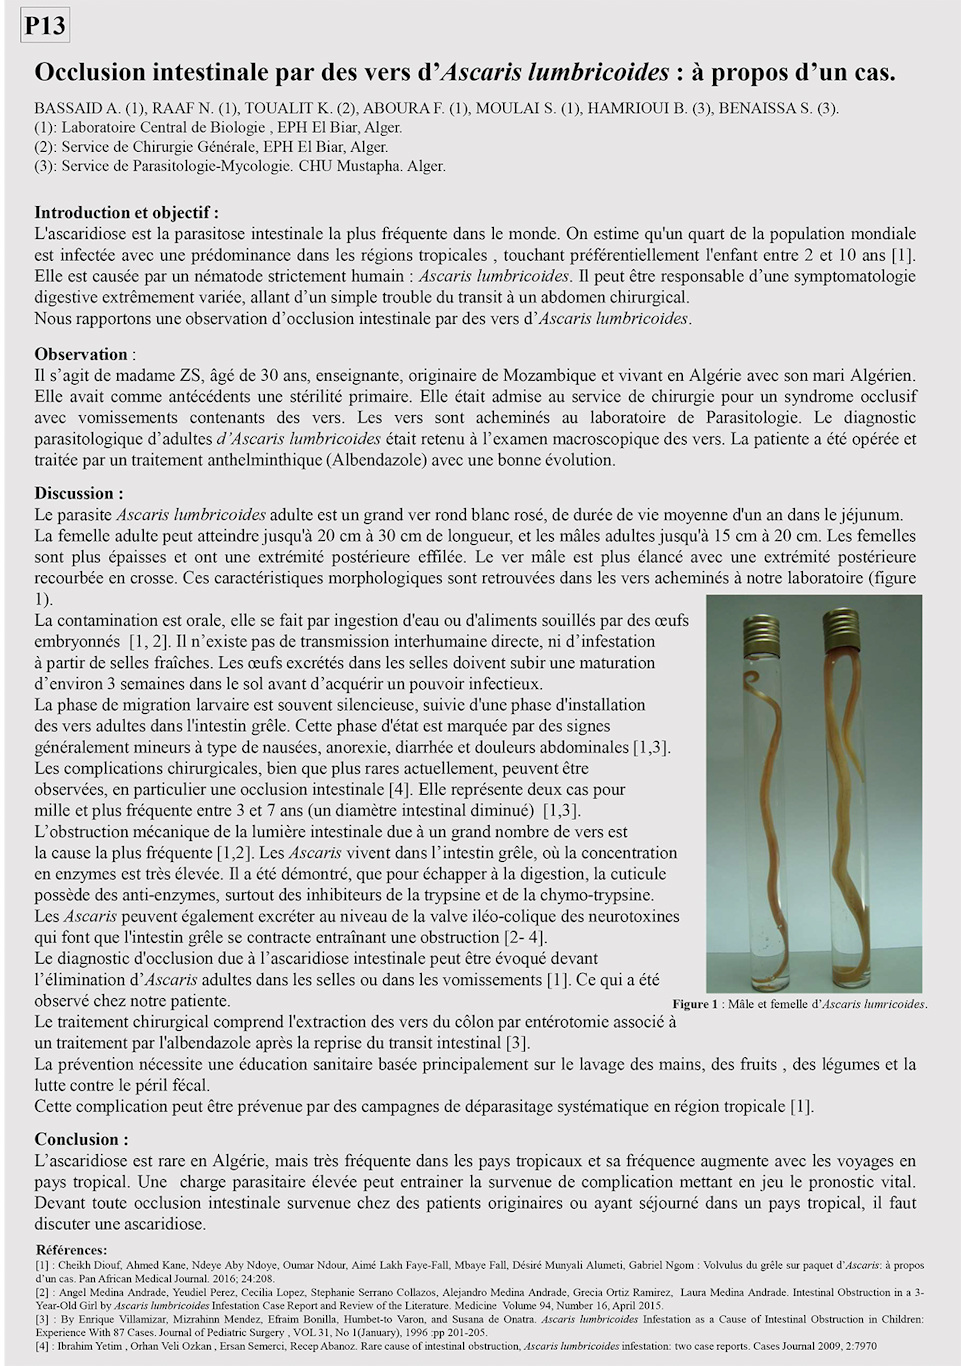 P13: Occlusion intestinale par des vers d’Ascaris lumbricoides : à propos d’un cas